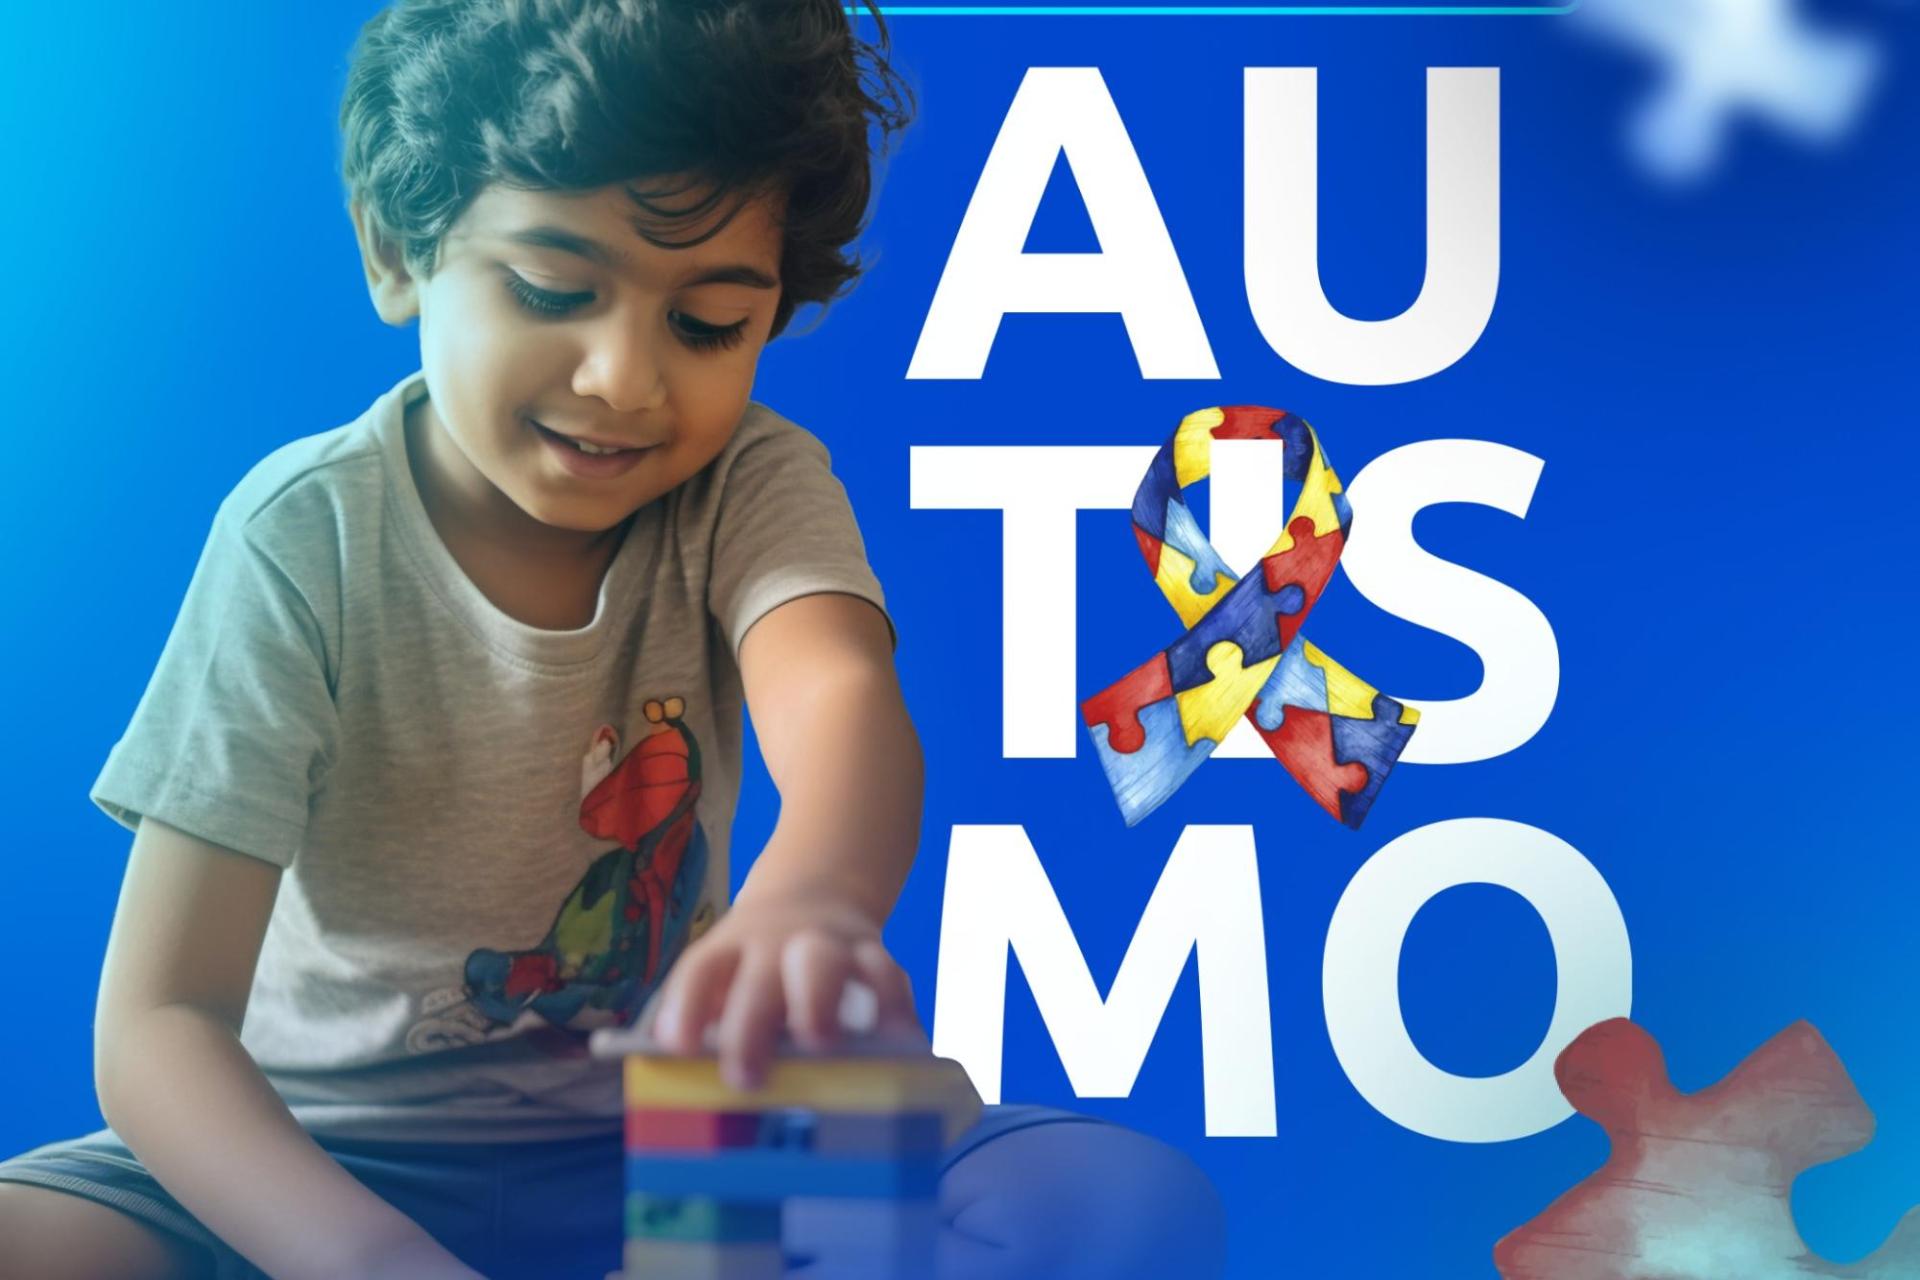 Grupo Madre Tereza Engajado na Conscientização do Autismo: Blitz Educatica Promove Conhecimento e Inclusão